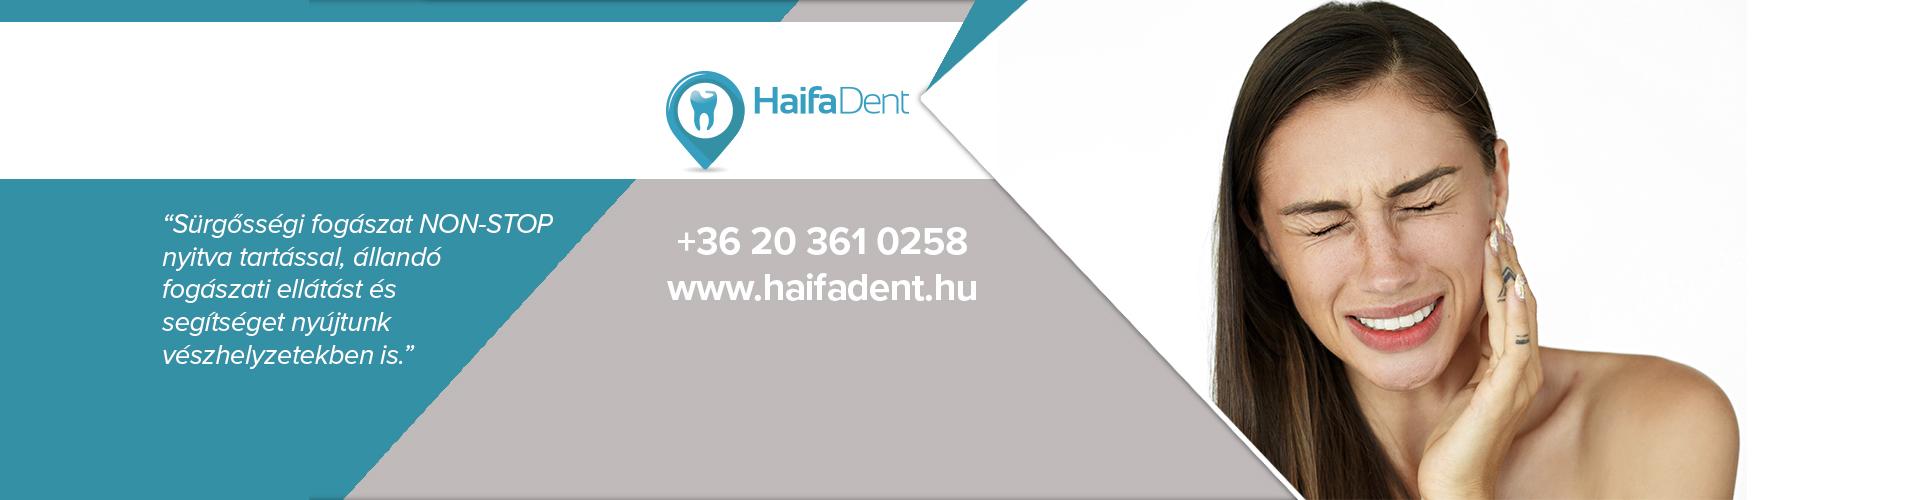 Haifa Dent 1-2